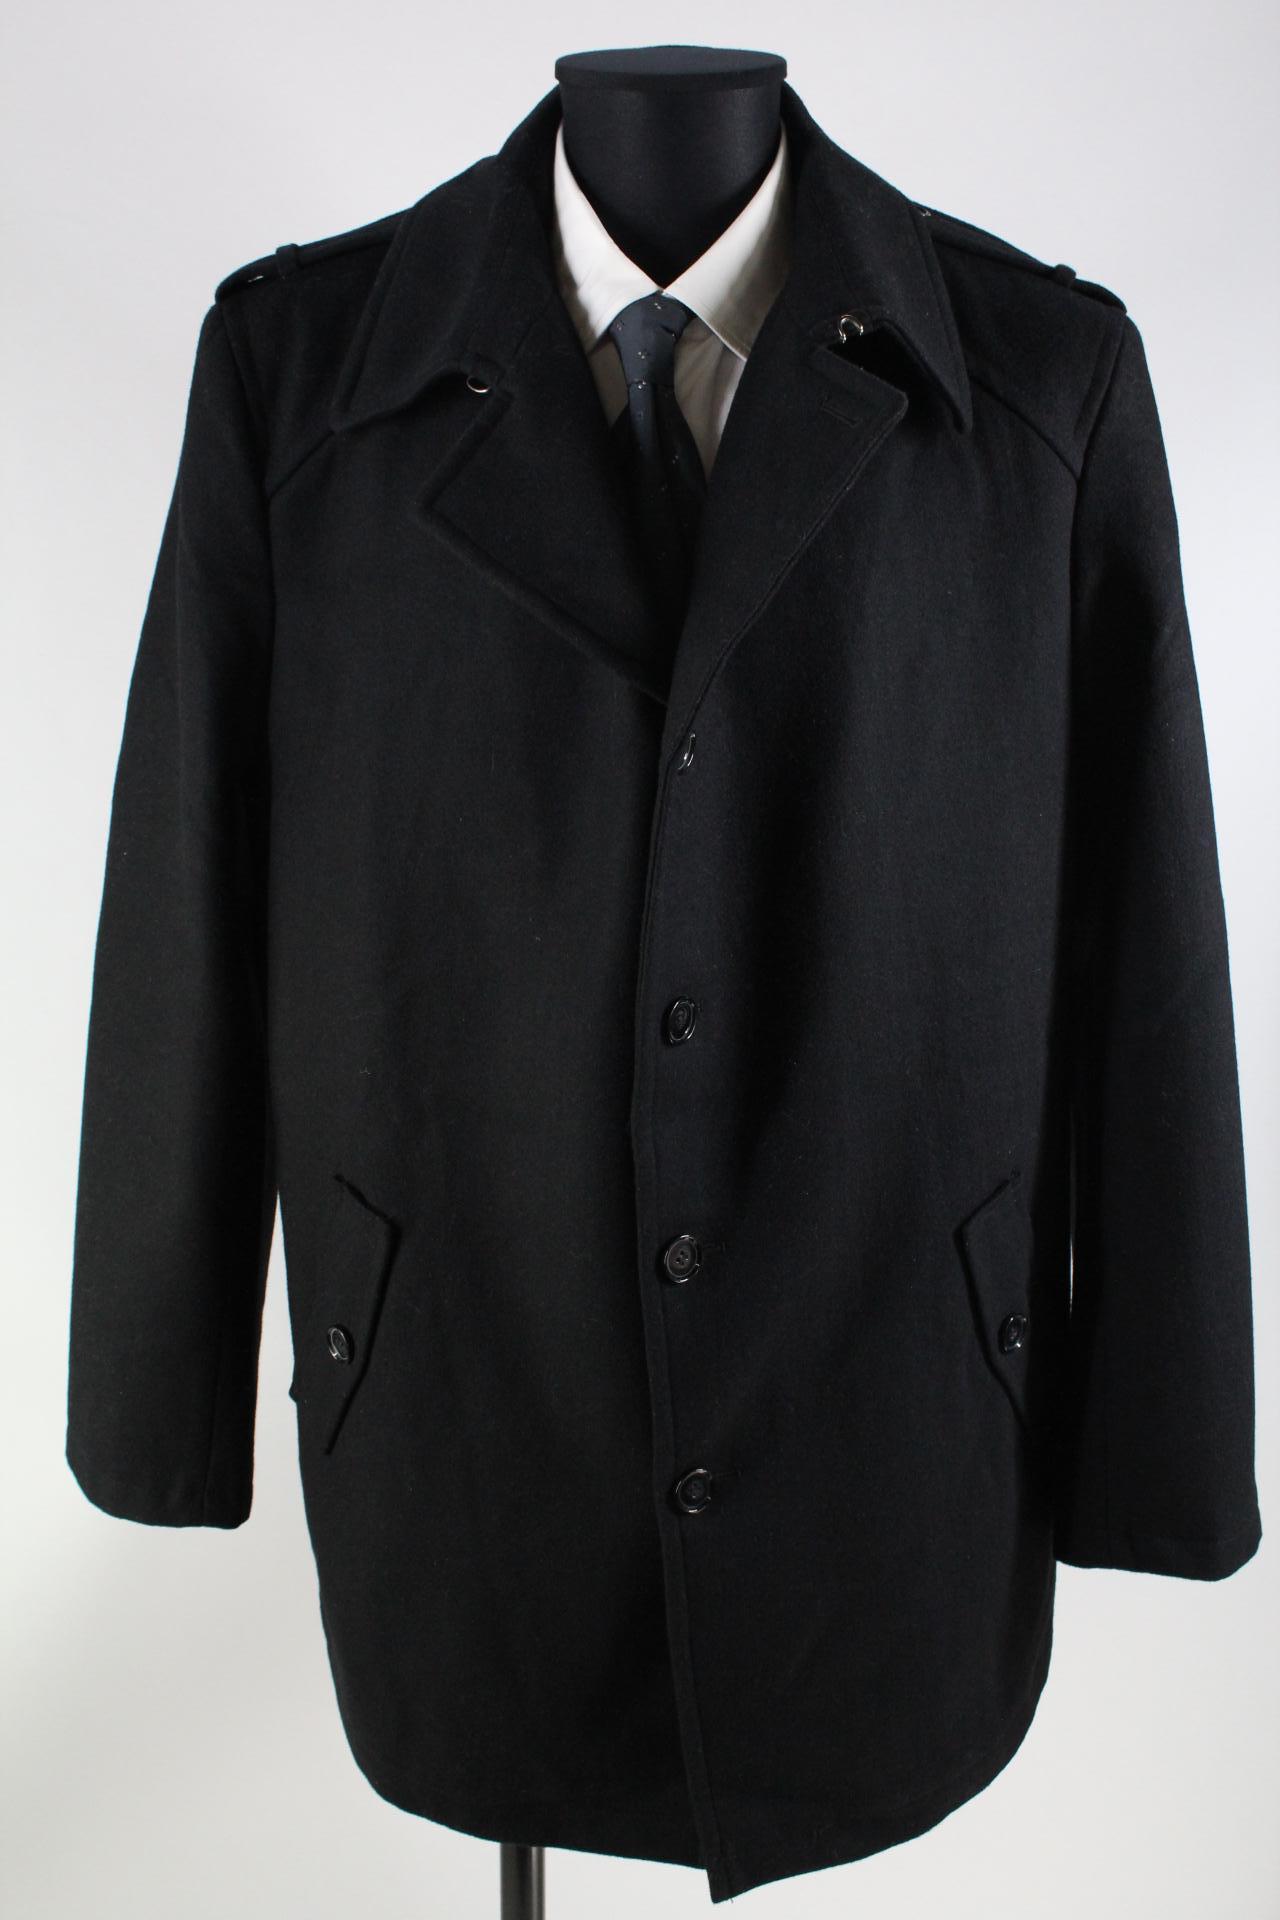 Authentic Herren-Mantel schwarz Größe 56